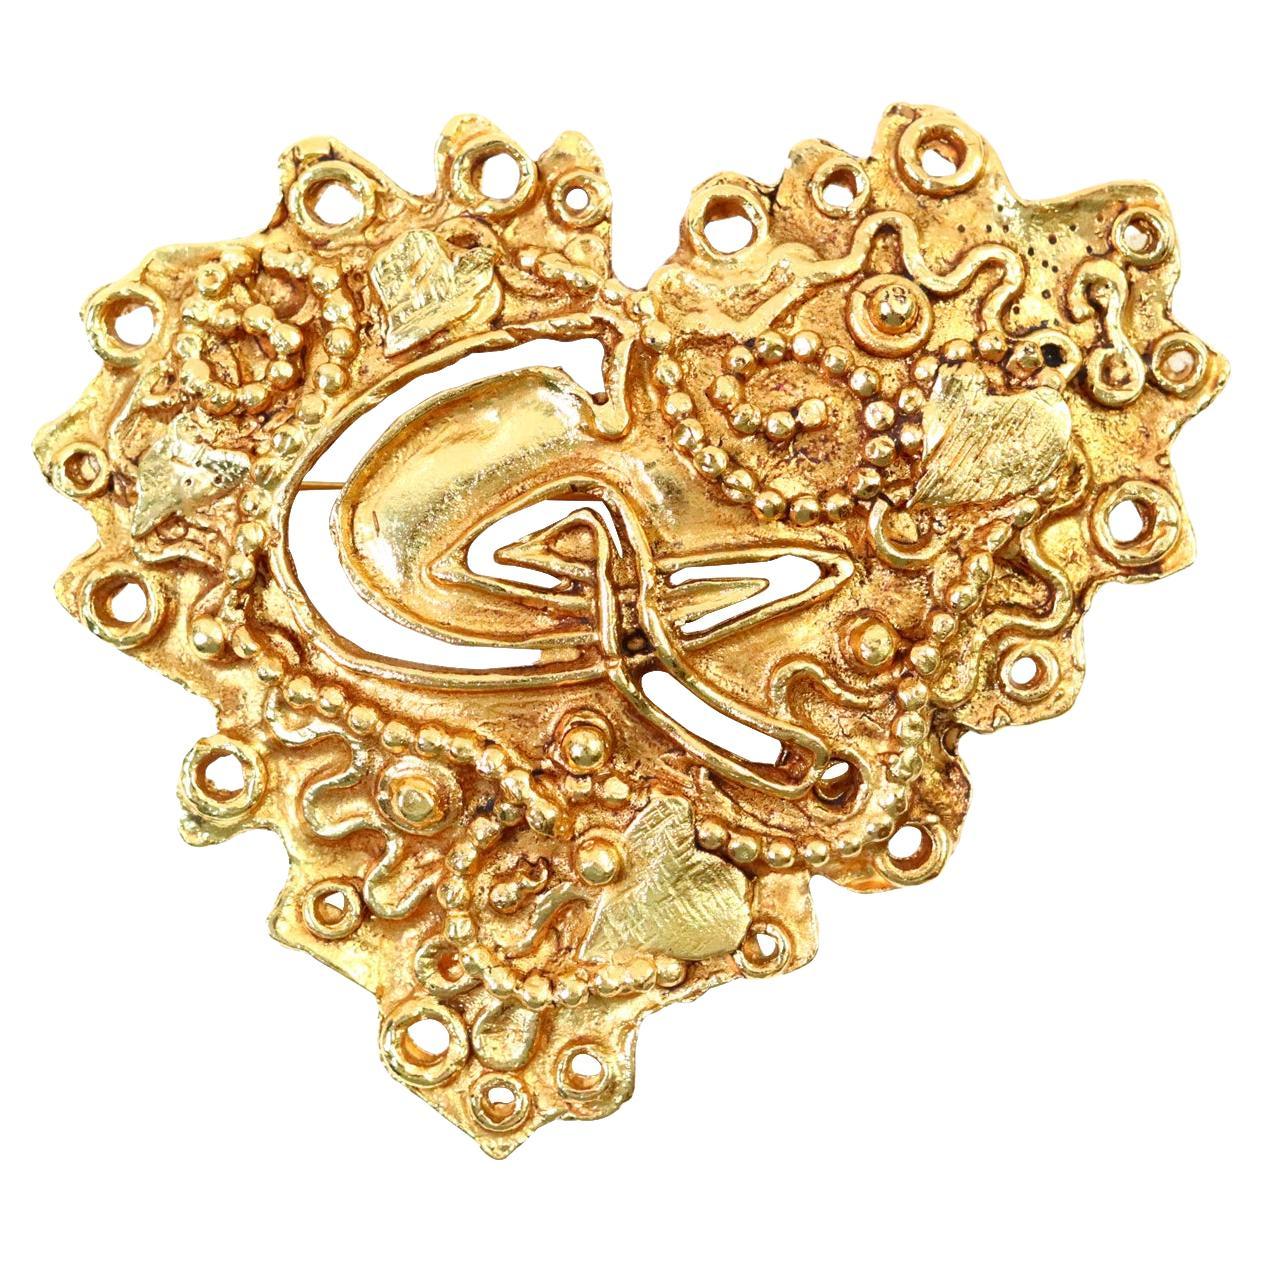 Vintage Christian Lacroix Gold Tone Heart Brooch with lots of Design and has Initials CL Carved in the Middle of the Misshapen Heart Brooch.  Correspond à un bracelet qui se trouve sur place.  Même texture intéressante. 

Lacroix dit que son icône